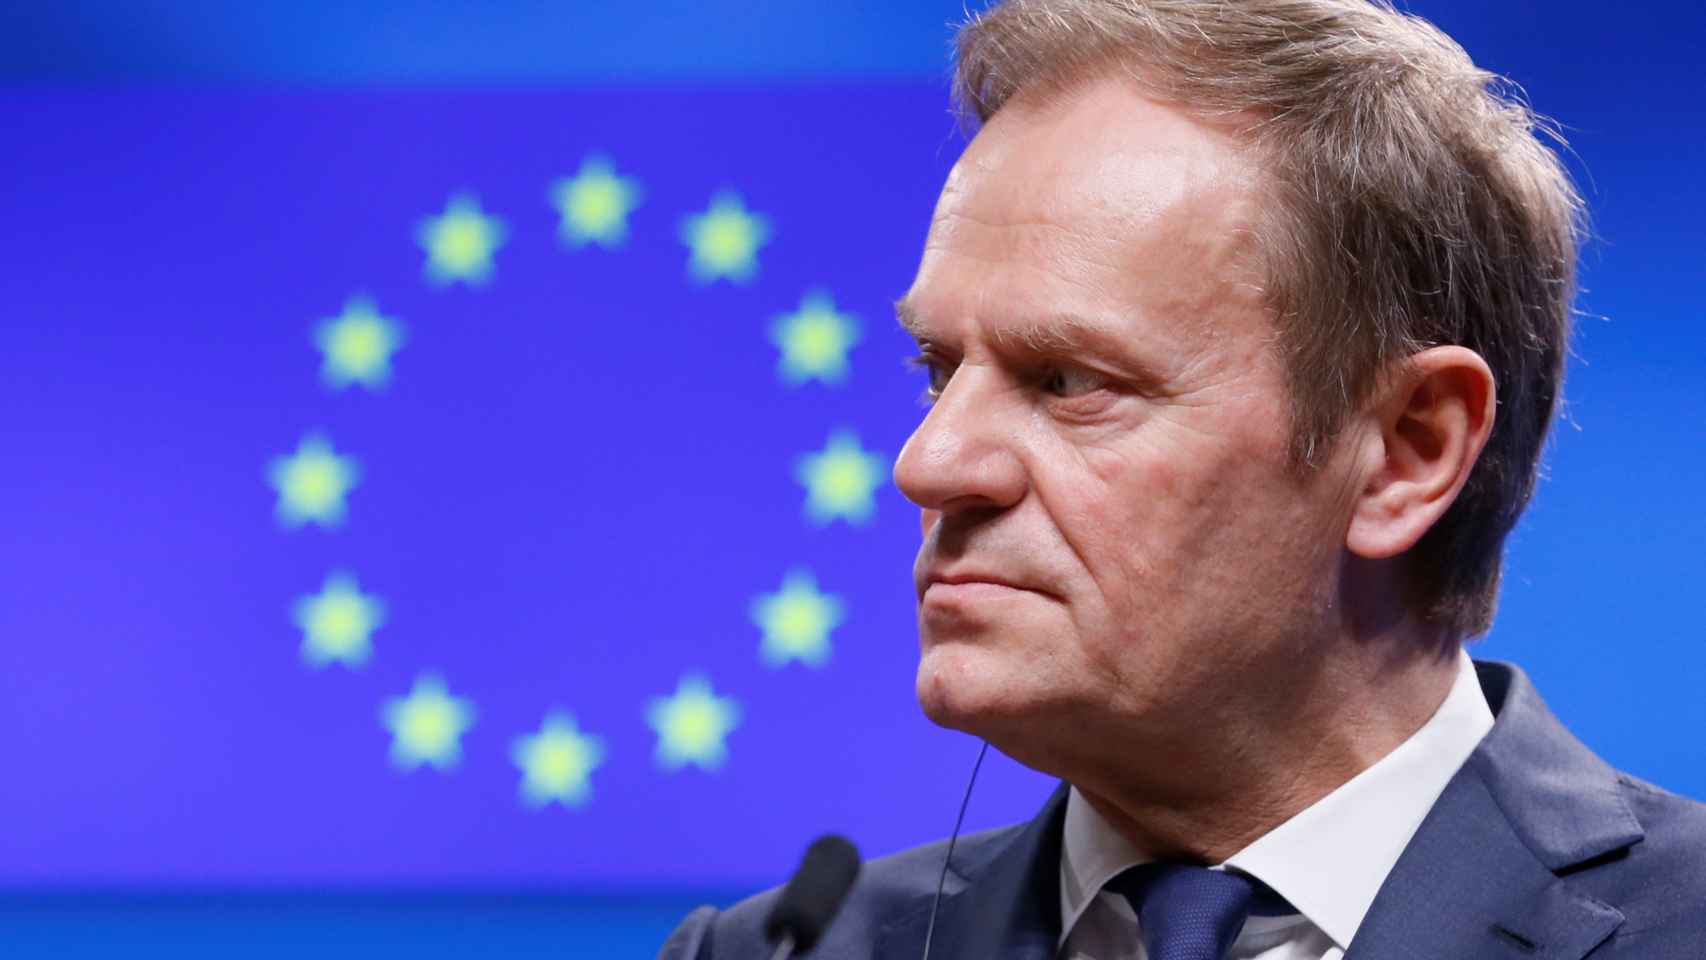 Los líderes europeos reelegirán a Tusk el próximo jueves